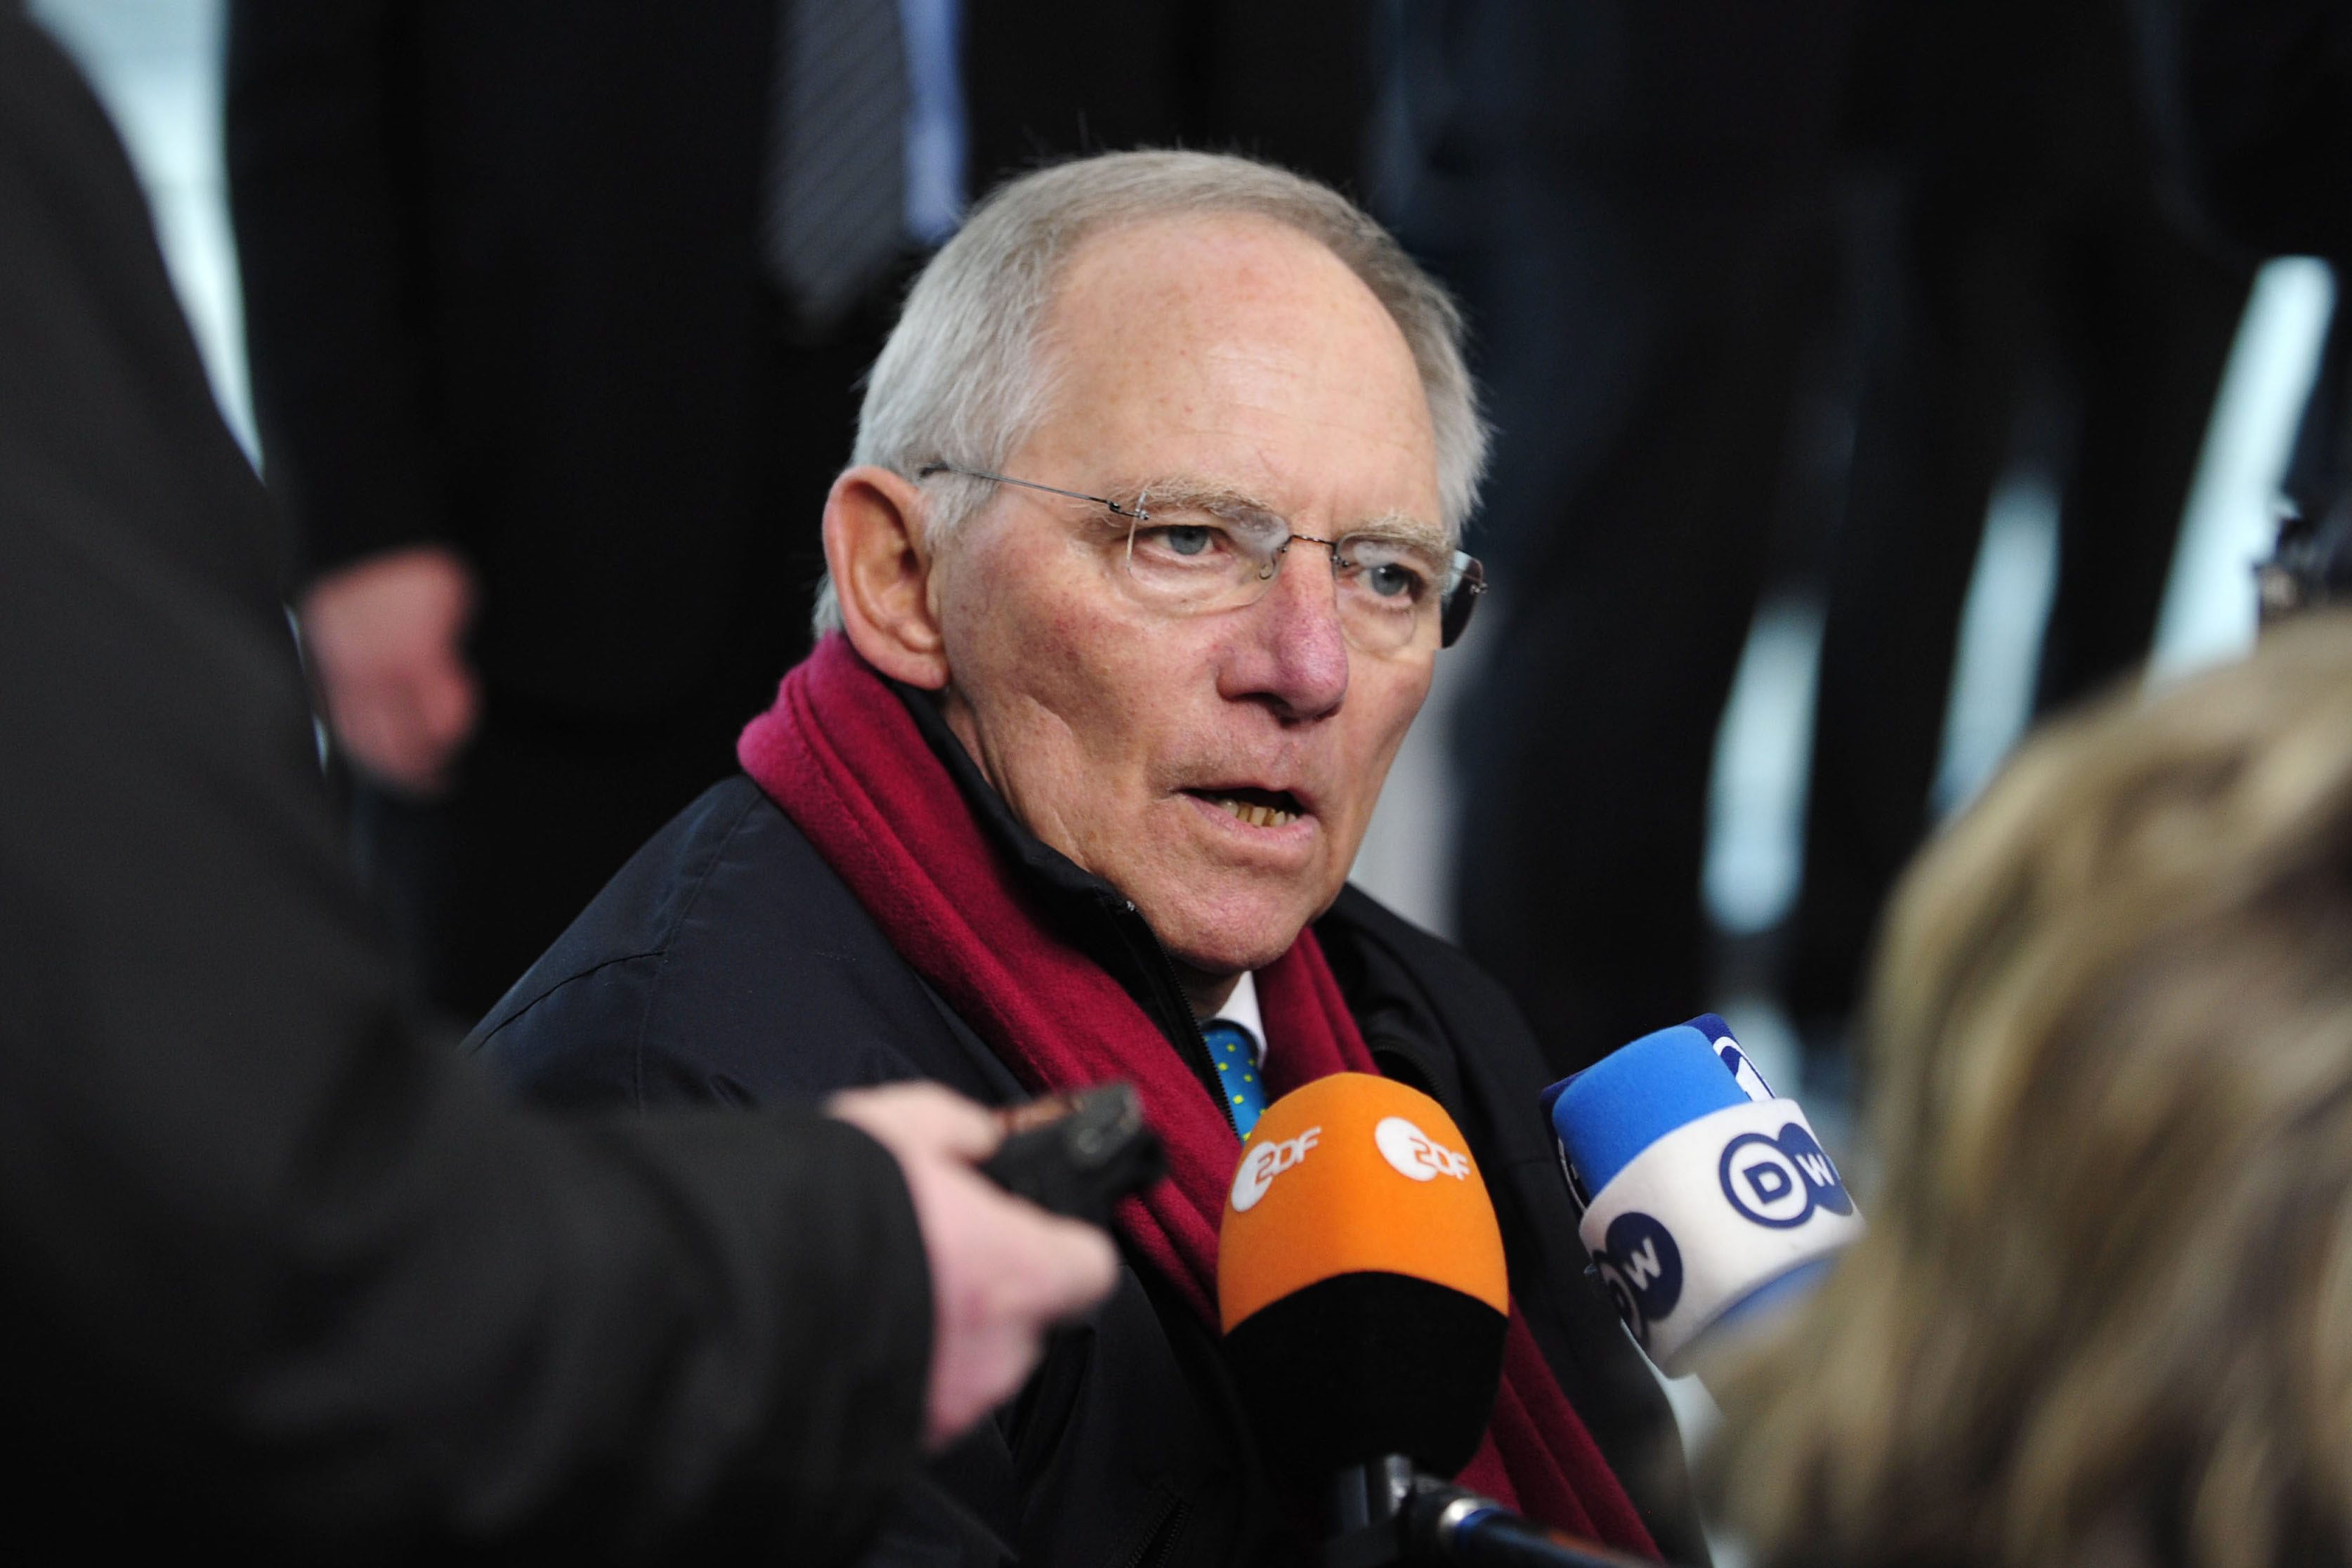 Wolfgang Schäuble wil ook in het volgende Duitse kabinet, waarover momenteel druk wordt onderhandeld, graag minister van Financiën zijn. Dat zegt hij in een maandag gepubliceerd interview met dagblad Bild. ,,Ik doe dit werk graag'', aldus Schäuble. ,,Maar er is afgesproken dat besluiten over de personele invulling helemaal aan het einde van de coalitieonderhandelingen worden genomen, als men het eens is geworden over alle inhoudelijke zaken.'' Schäuble wacht naar eigen zeggen ,,ontspannen'' af.